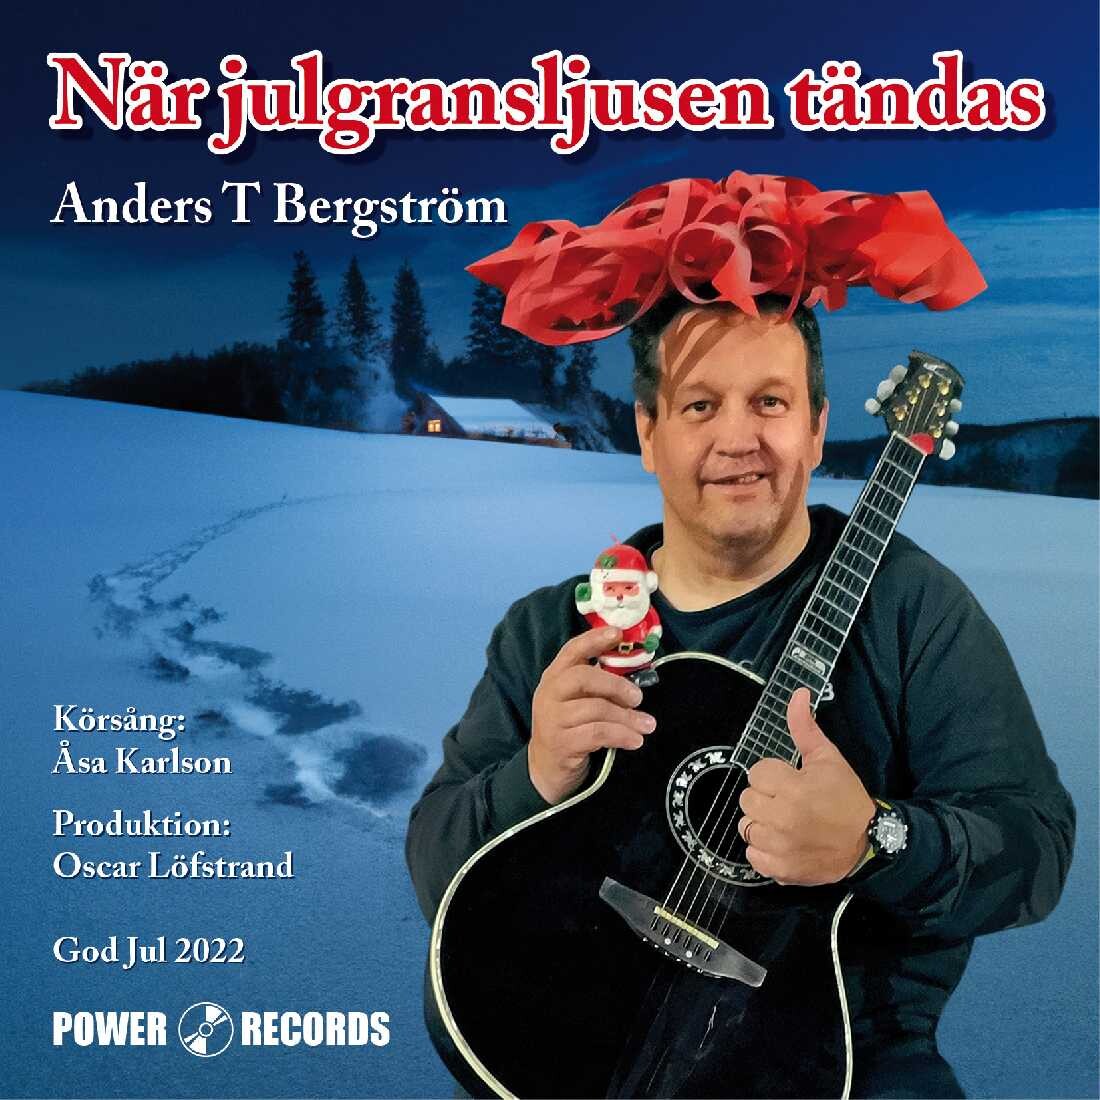 Årets julsång av Anders T Bergström.